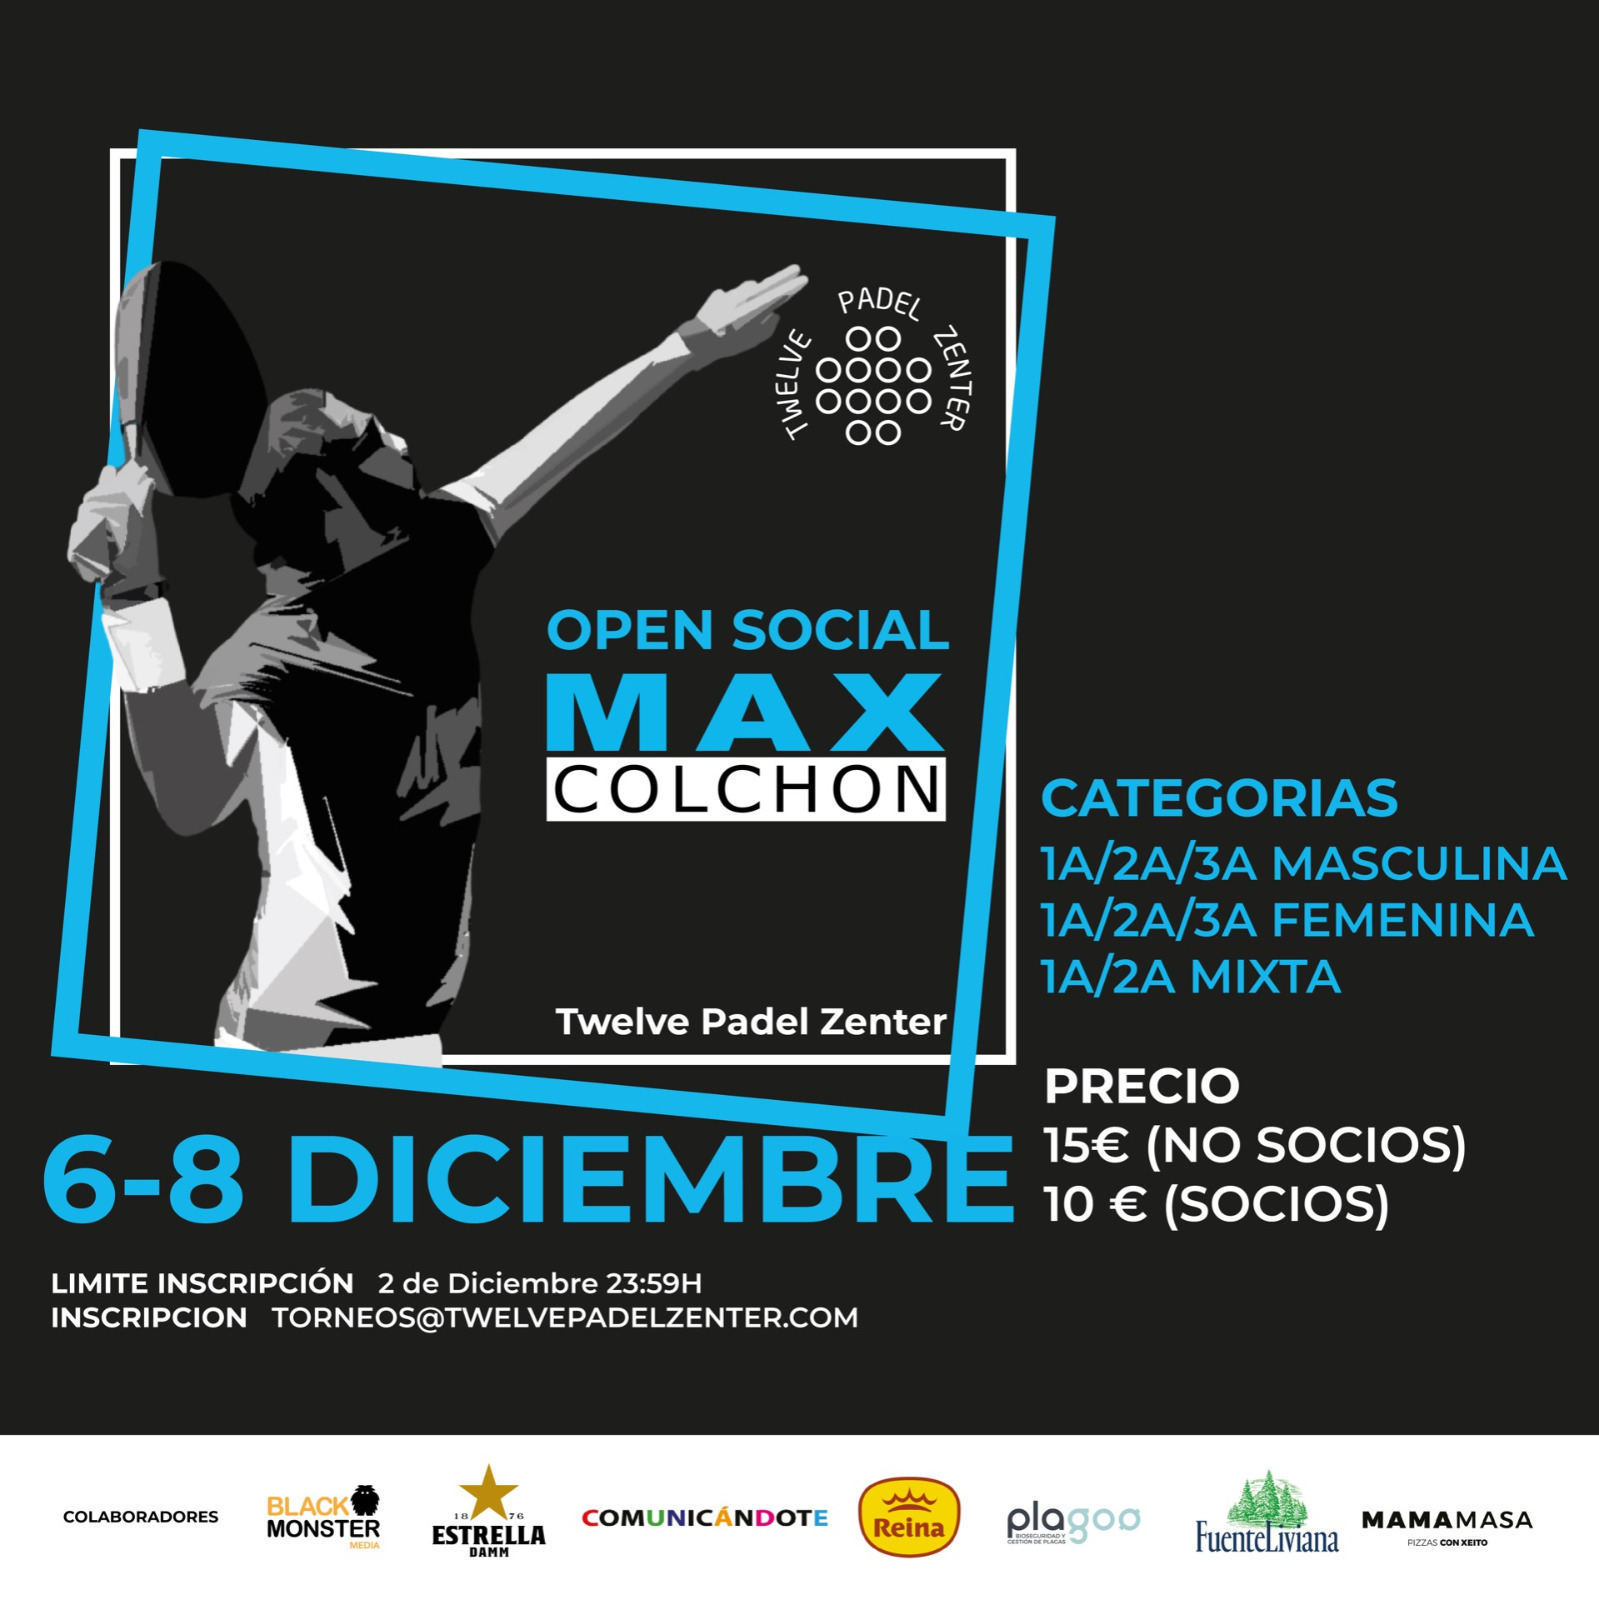 Cartel del Open Social Max Colchon